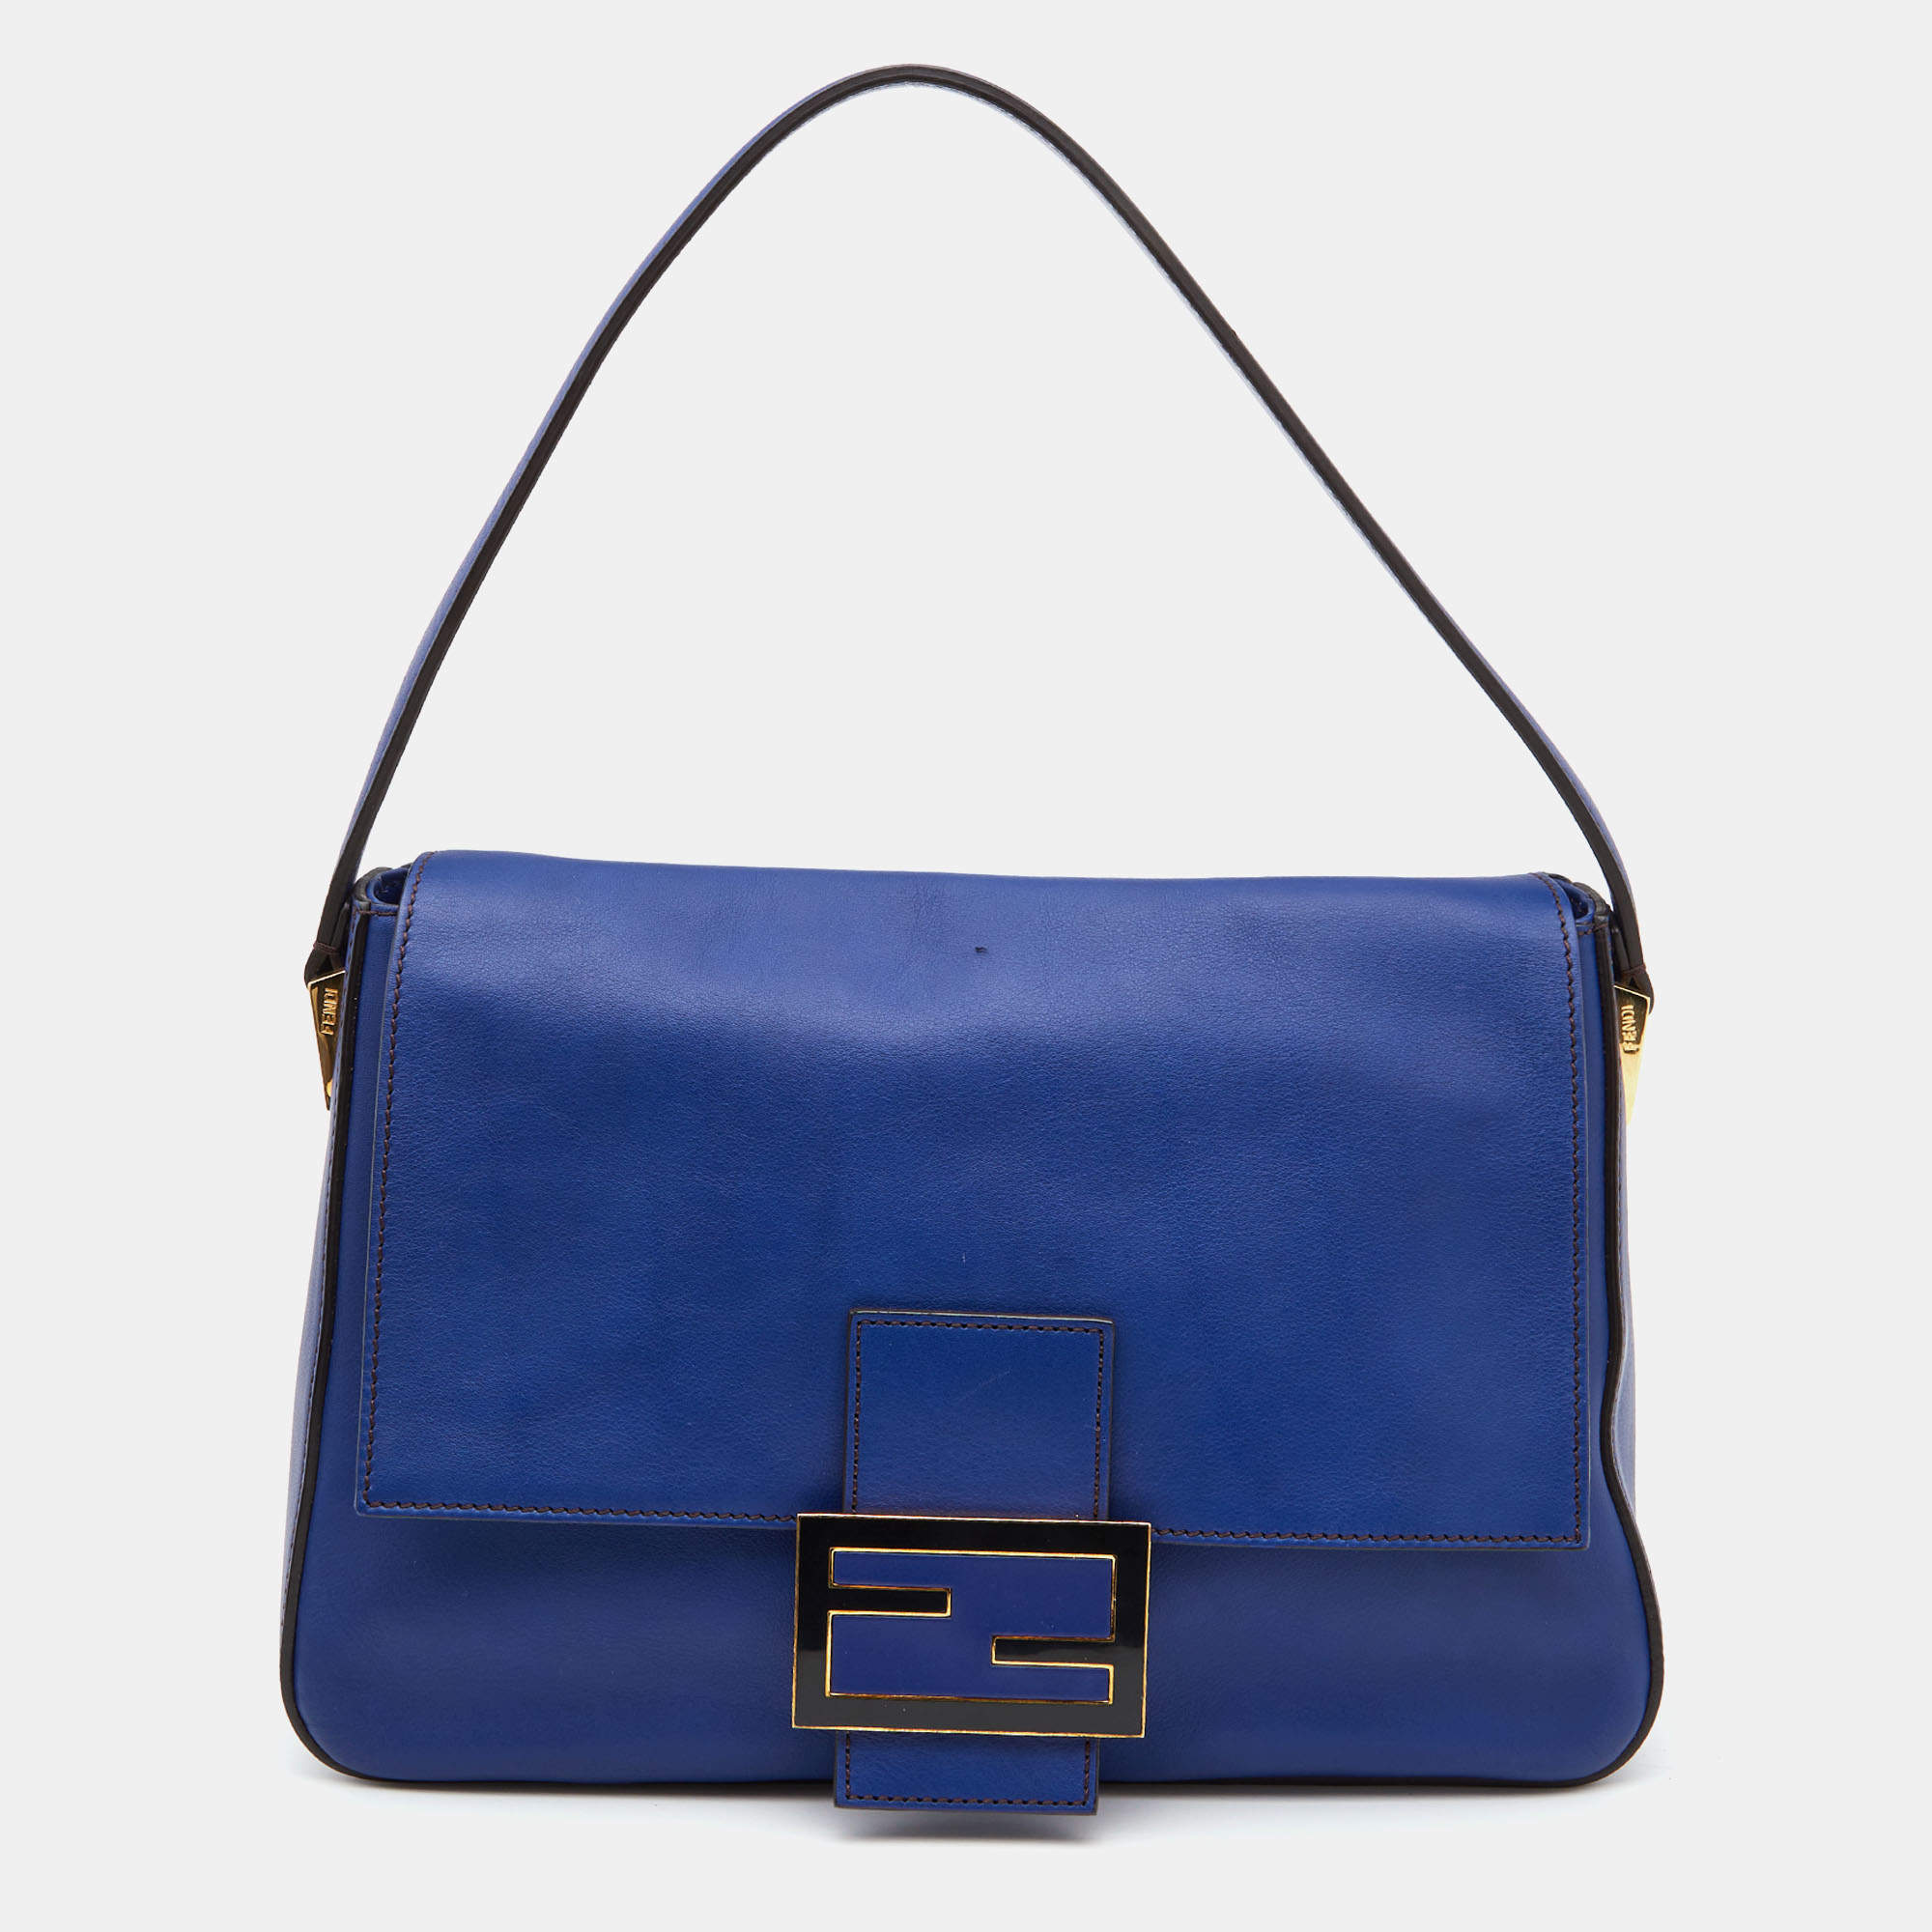 Fendi Blue Leather Mama Forever Shoulder Bag Fendi | The Luxury Closet